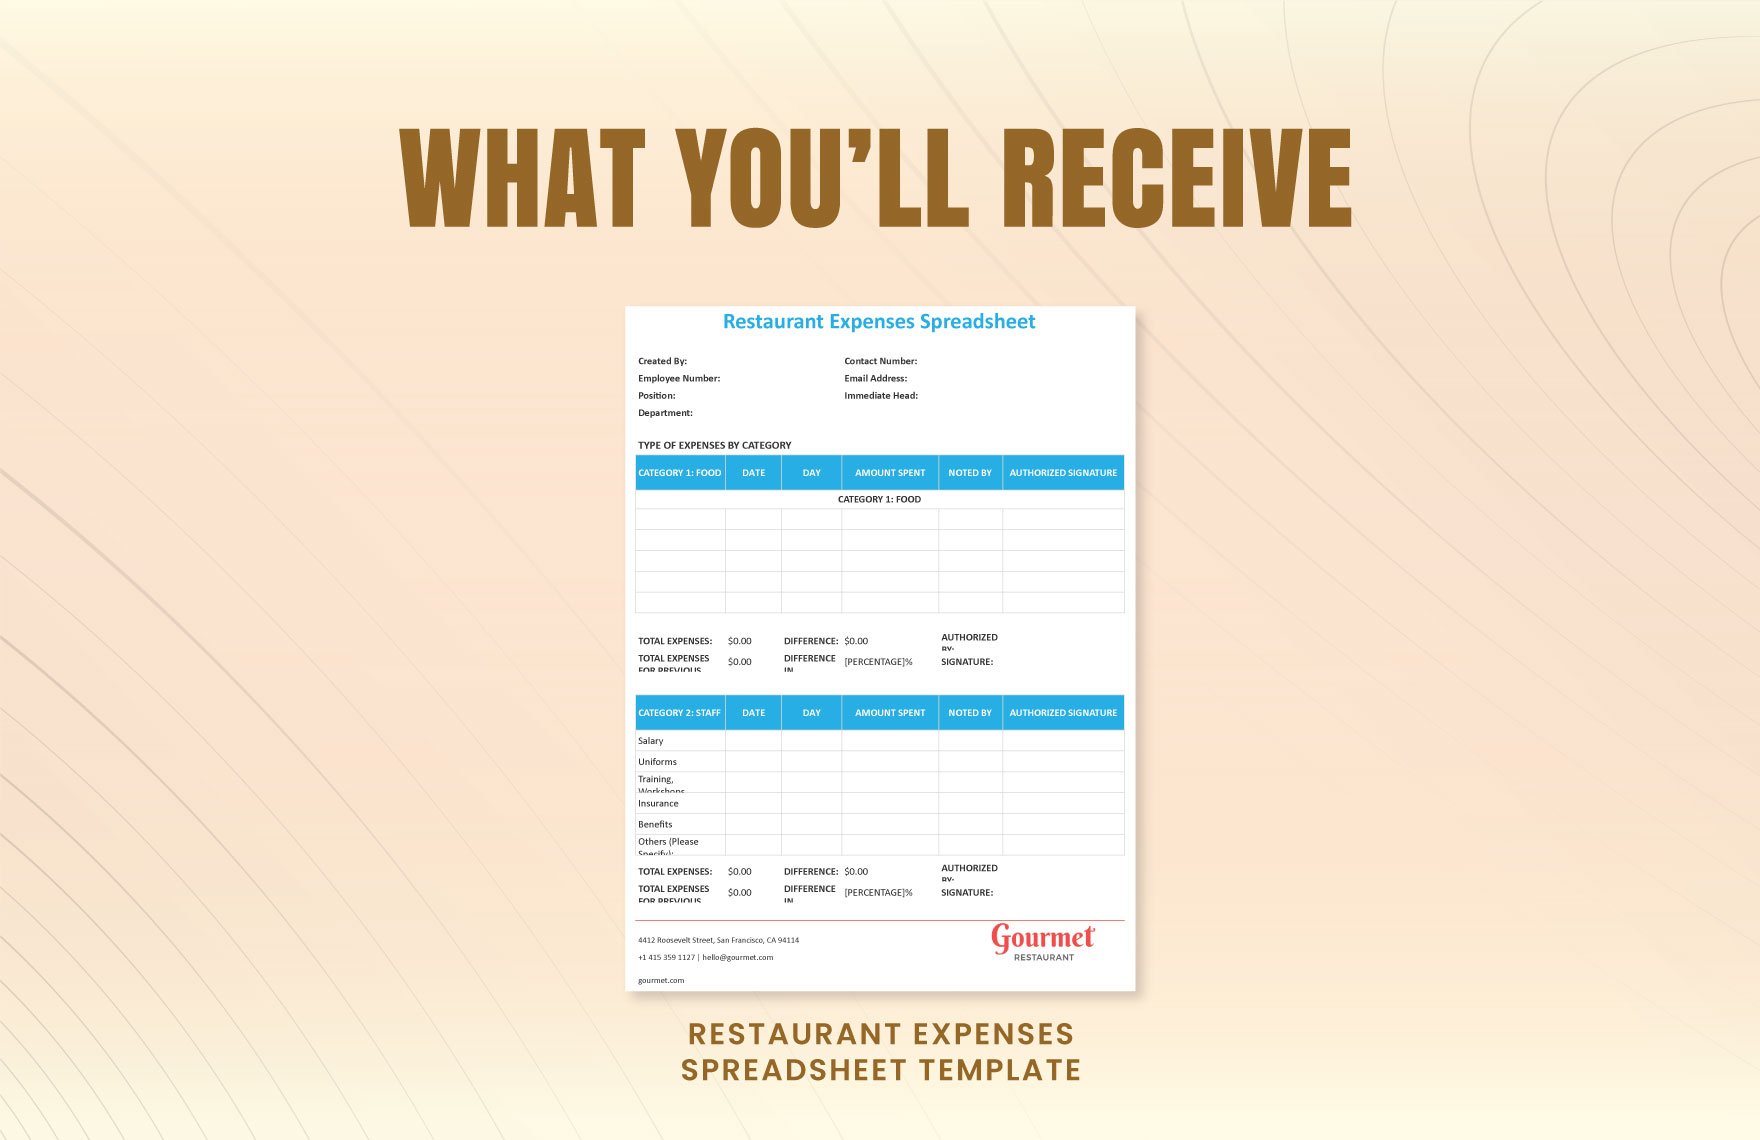 Restaurant Expenses Spreadsheet Template